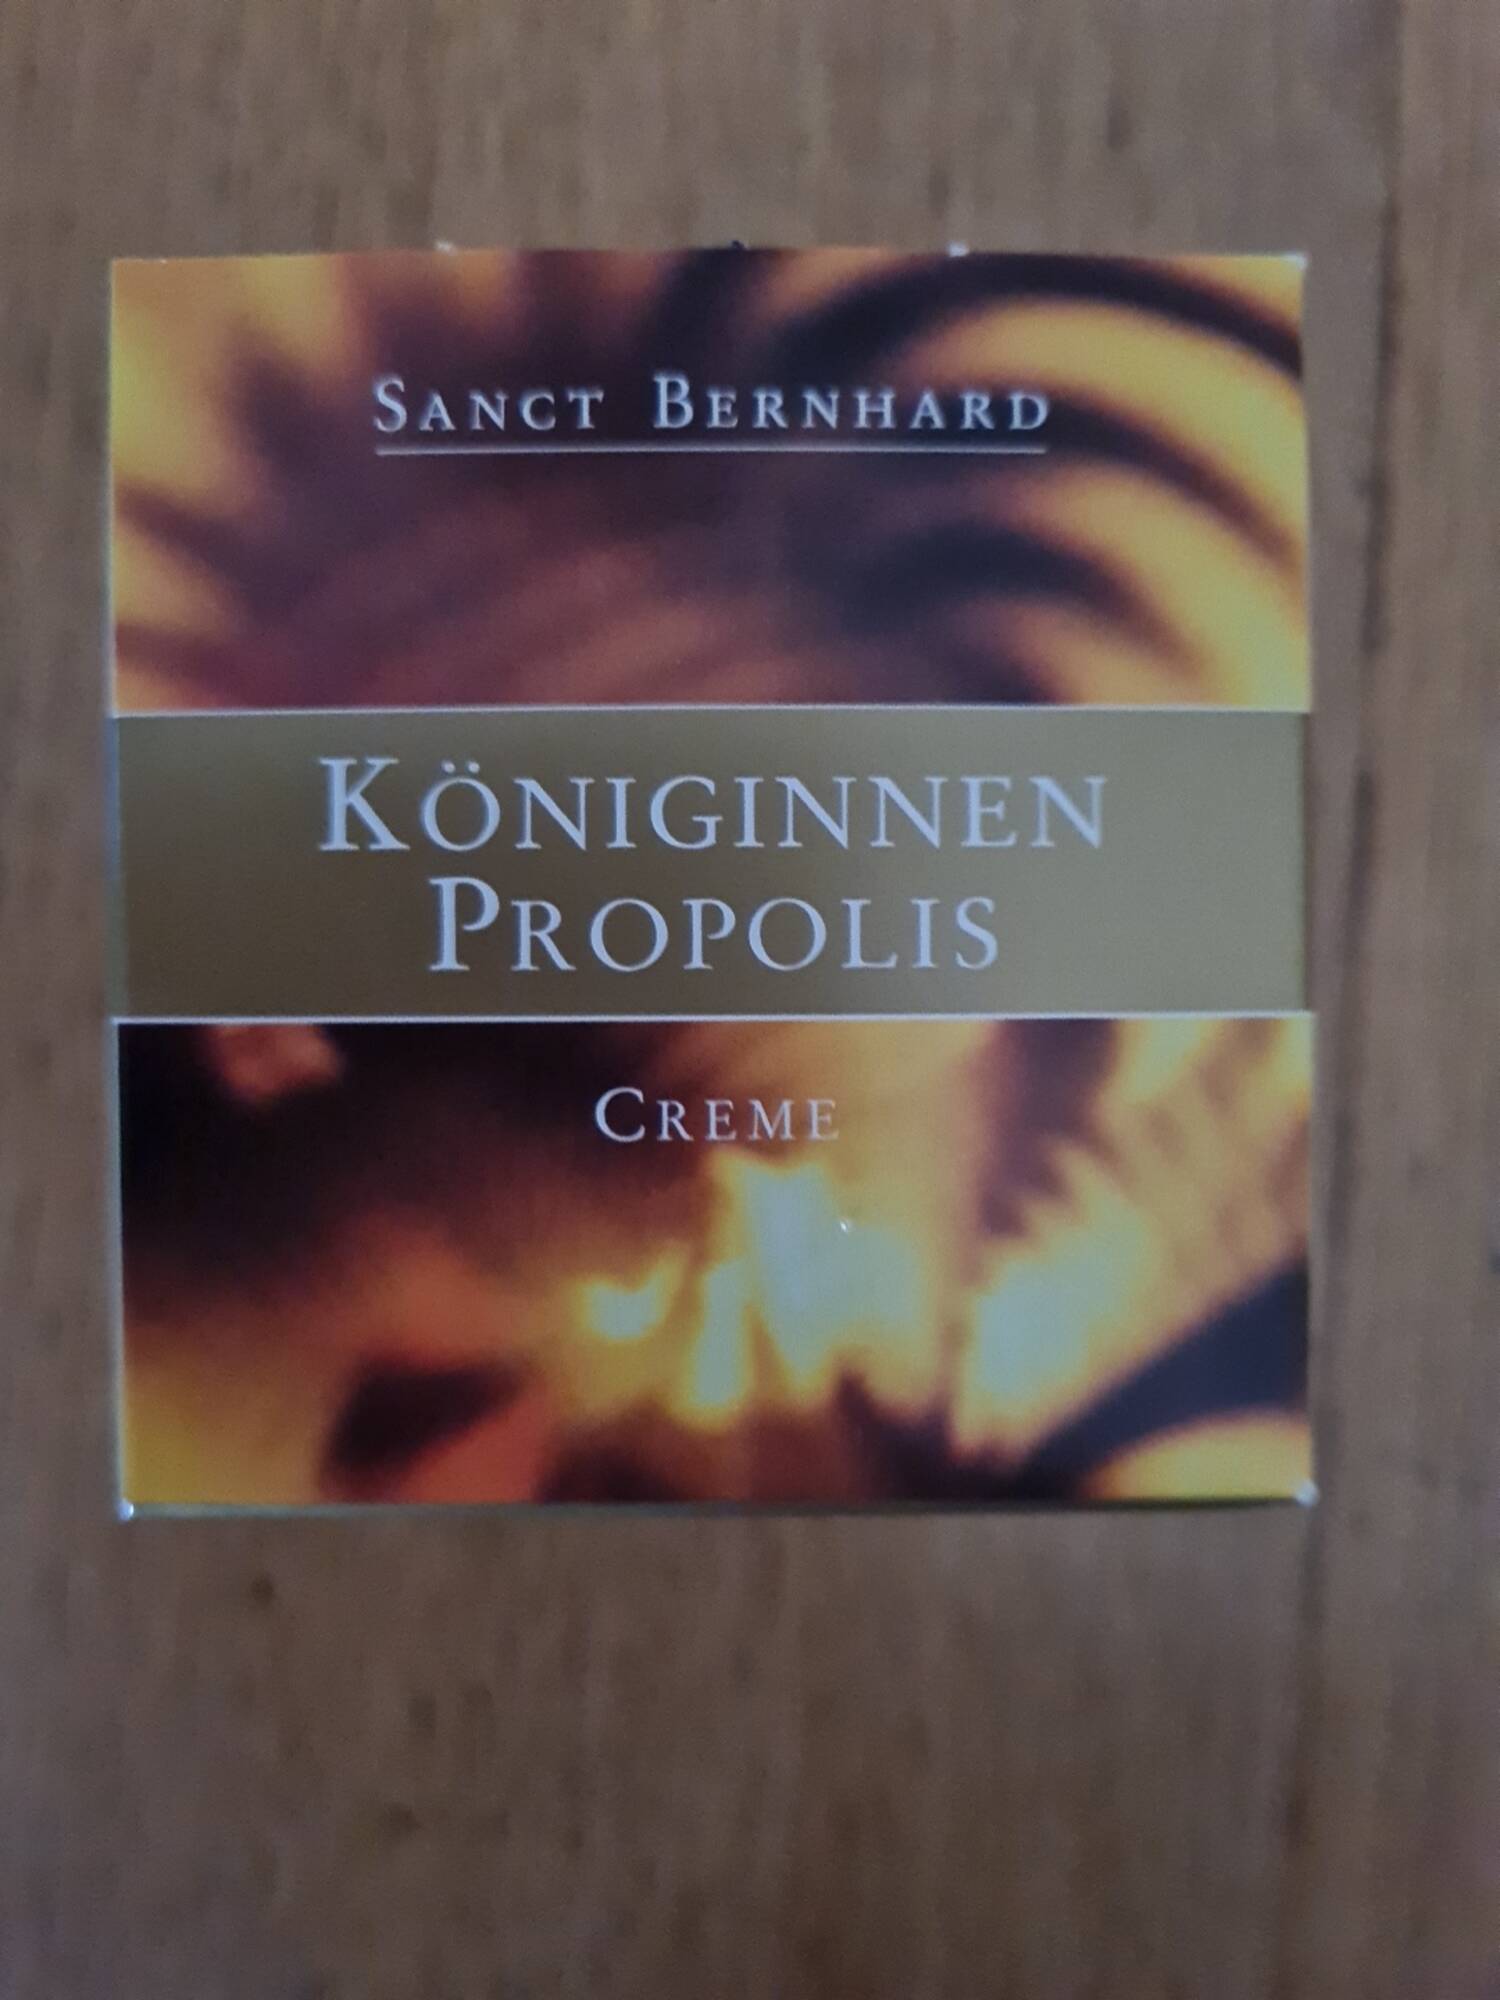 SANCT BERNHARD - Königinnen propolis - Creme